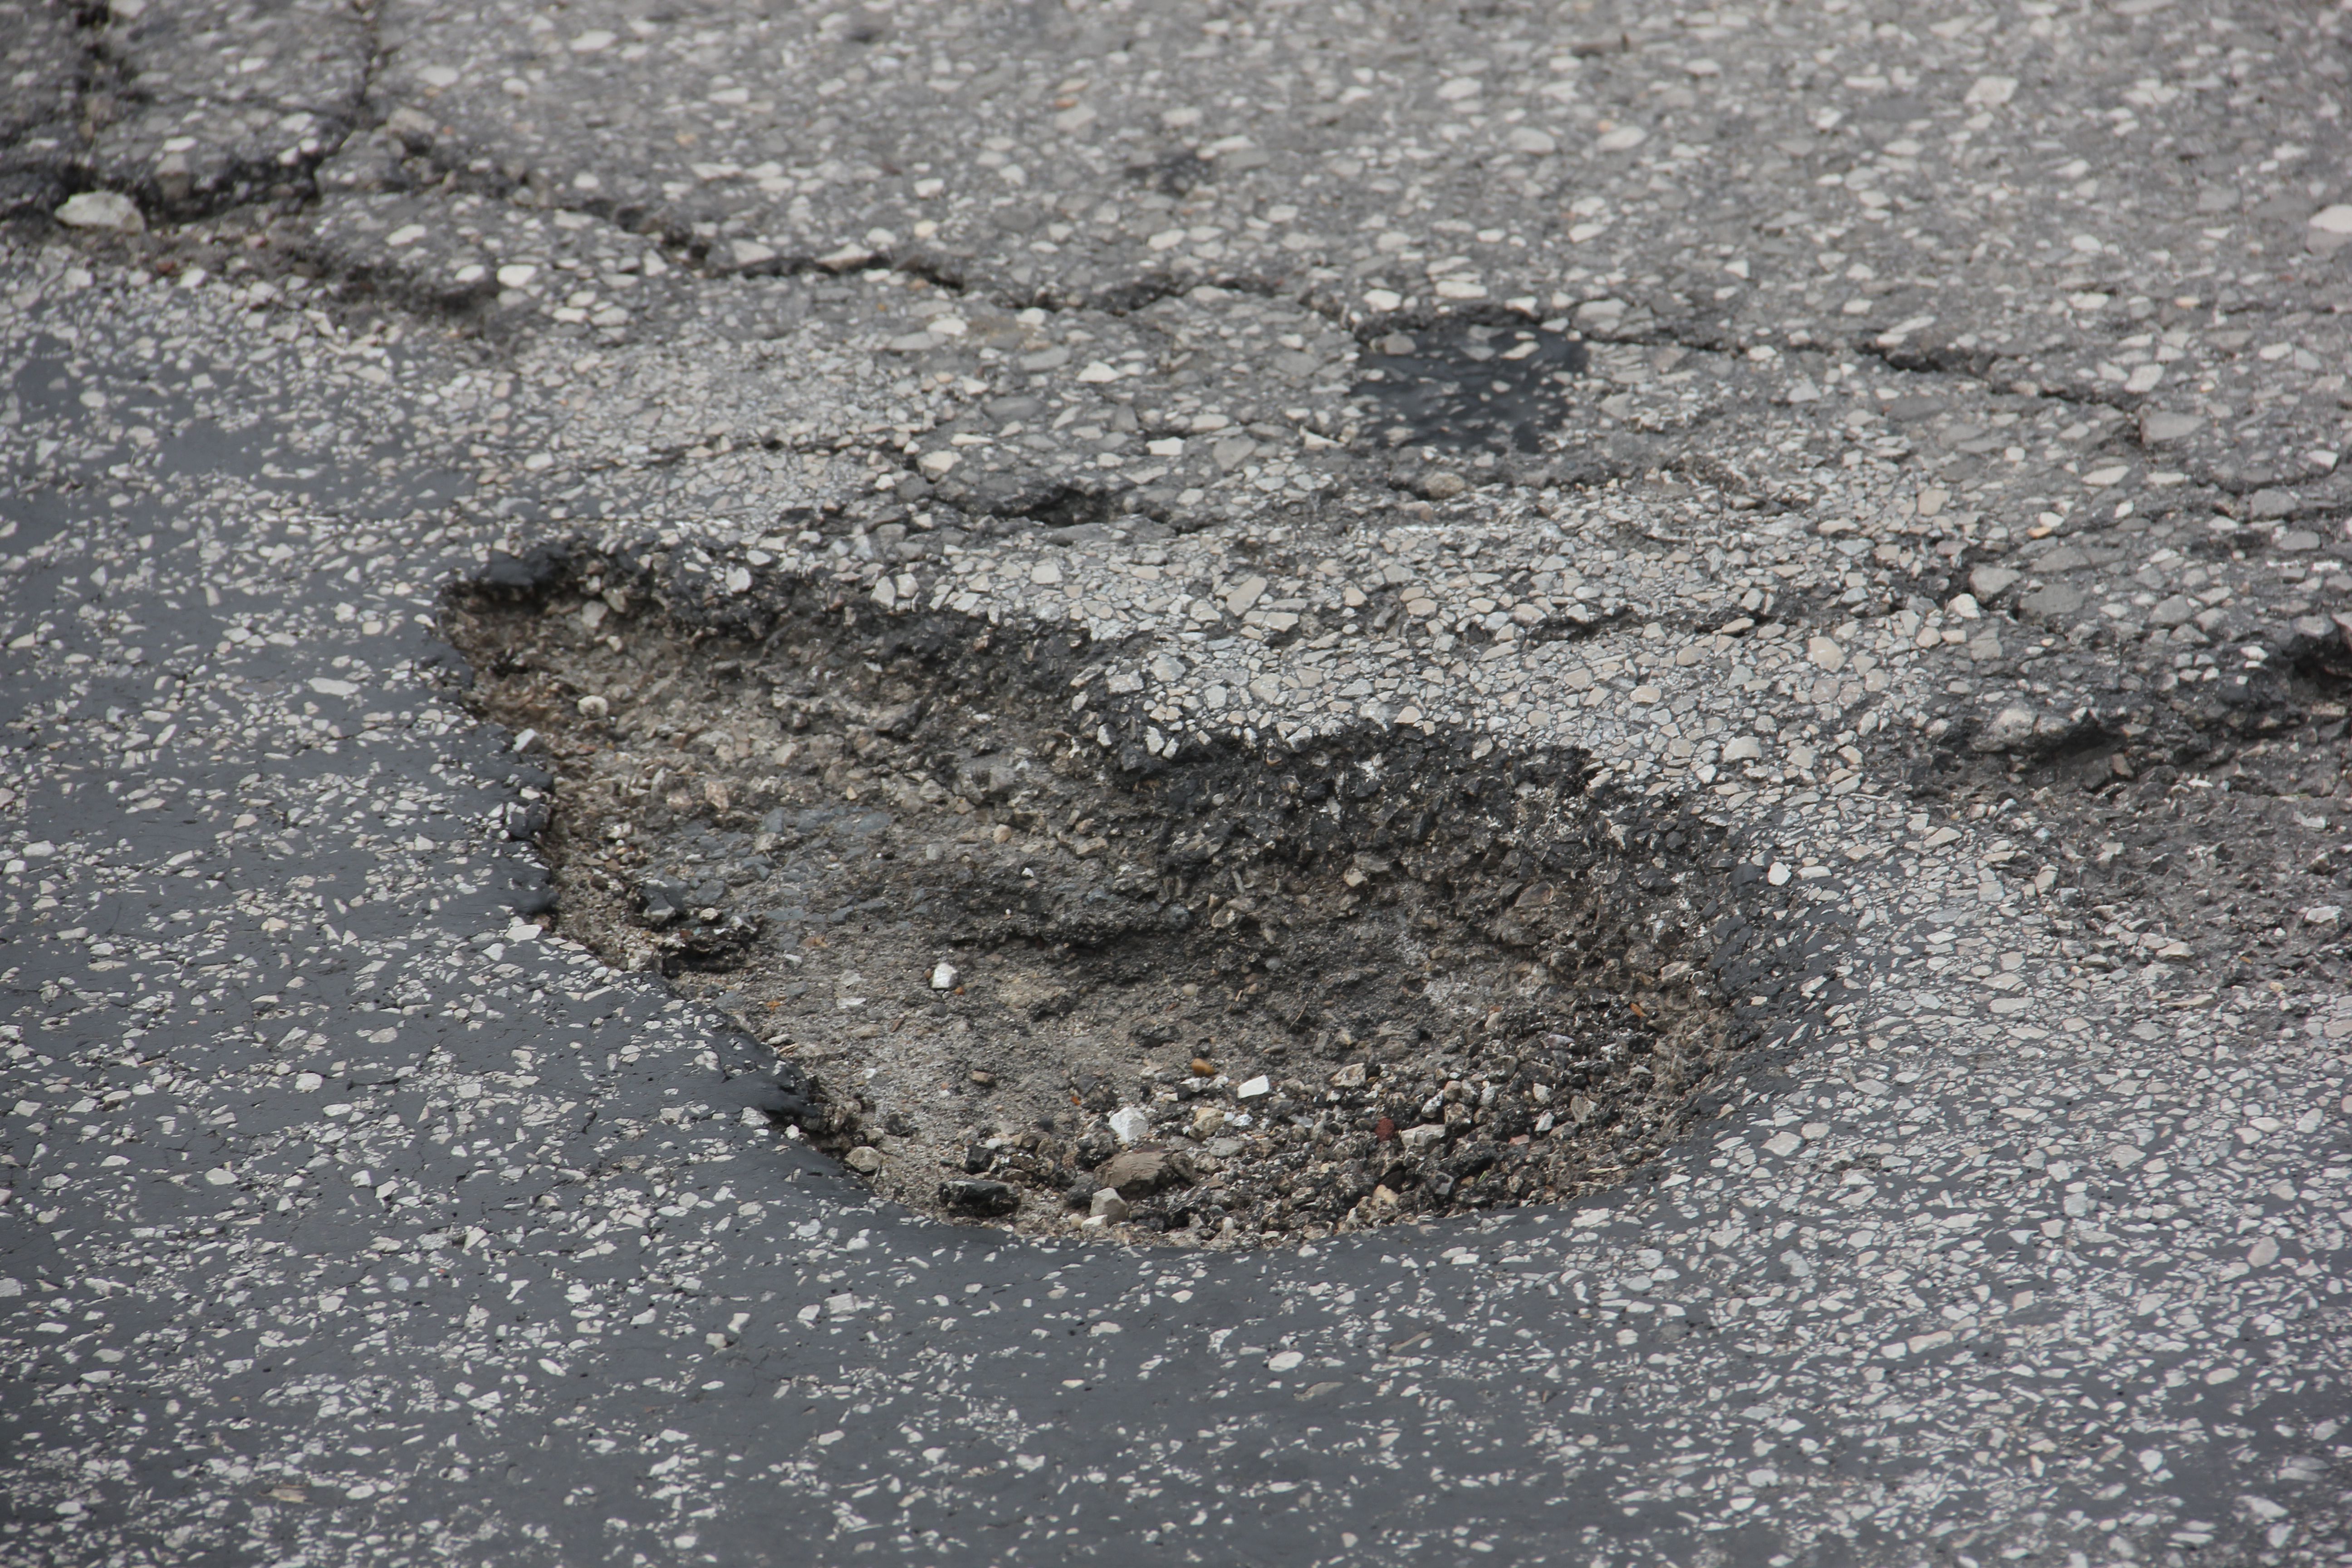 A deep pothole